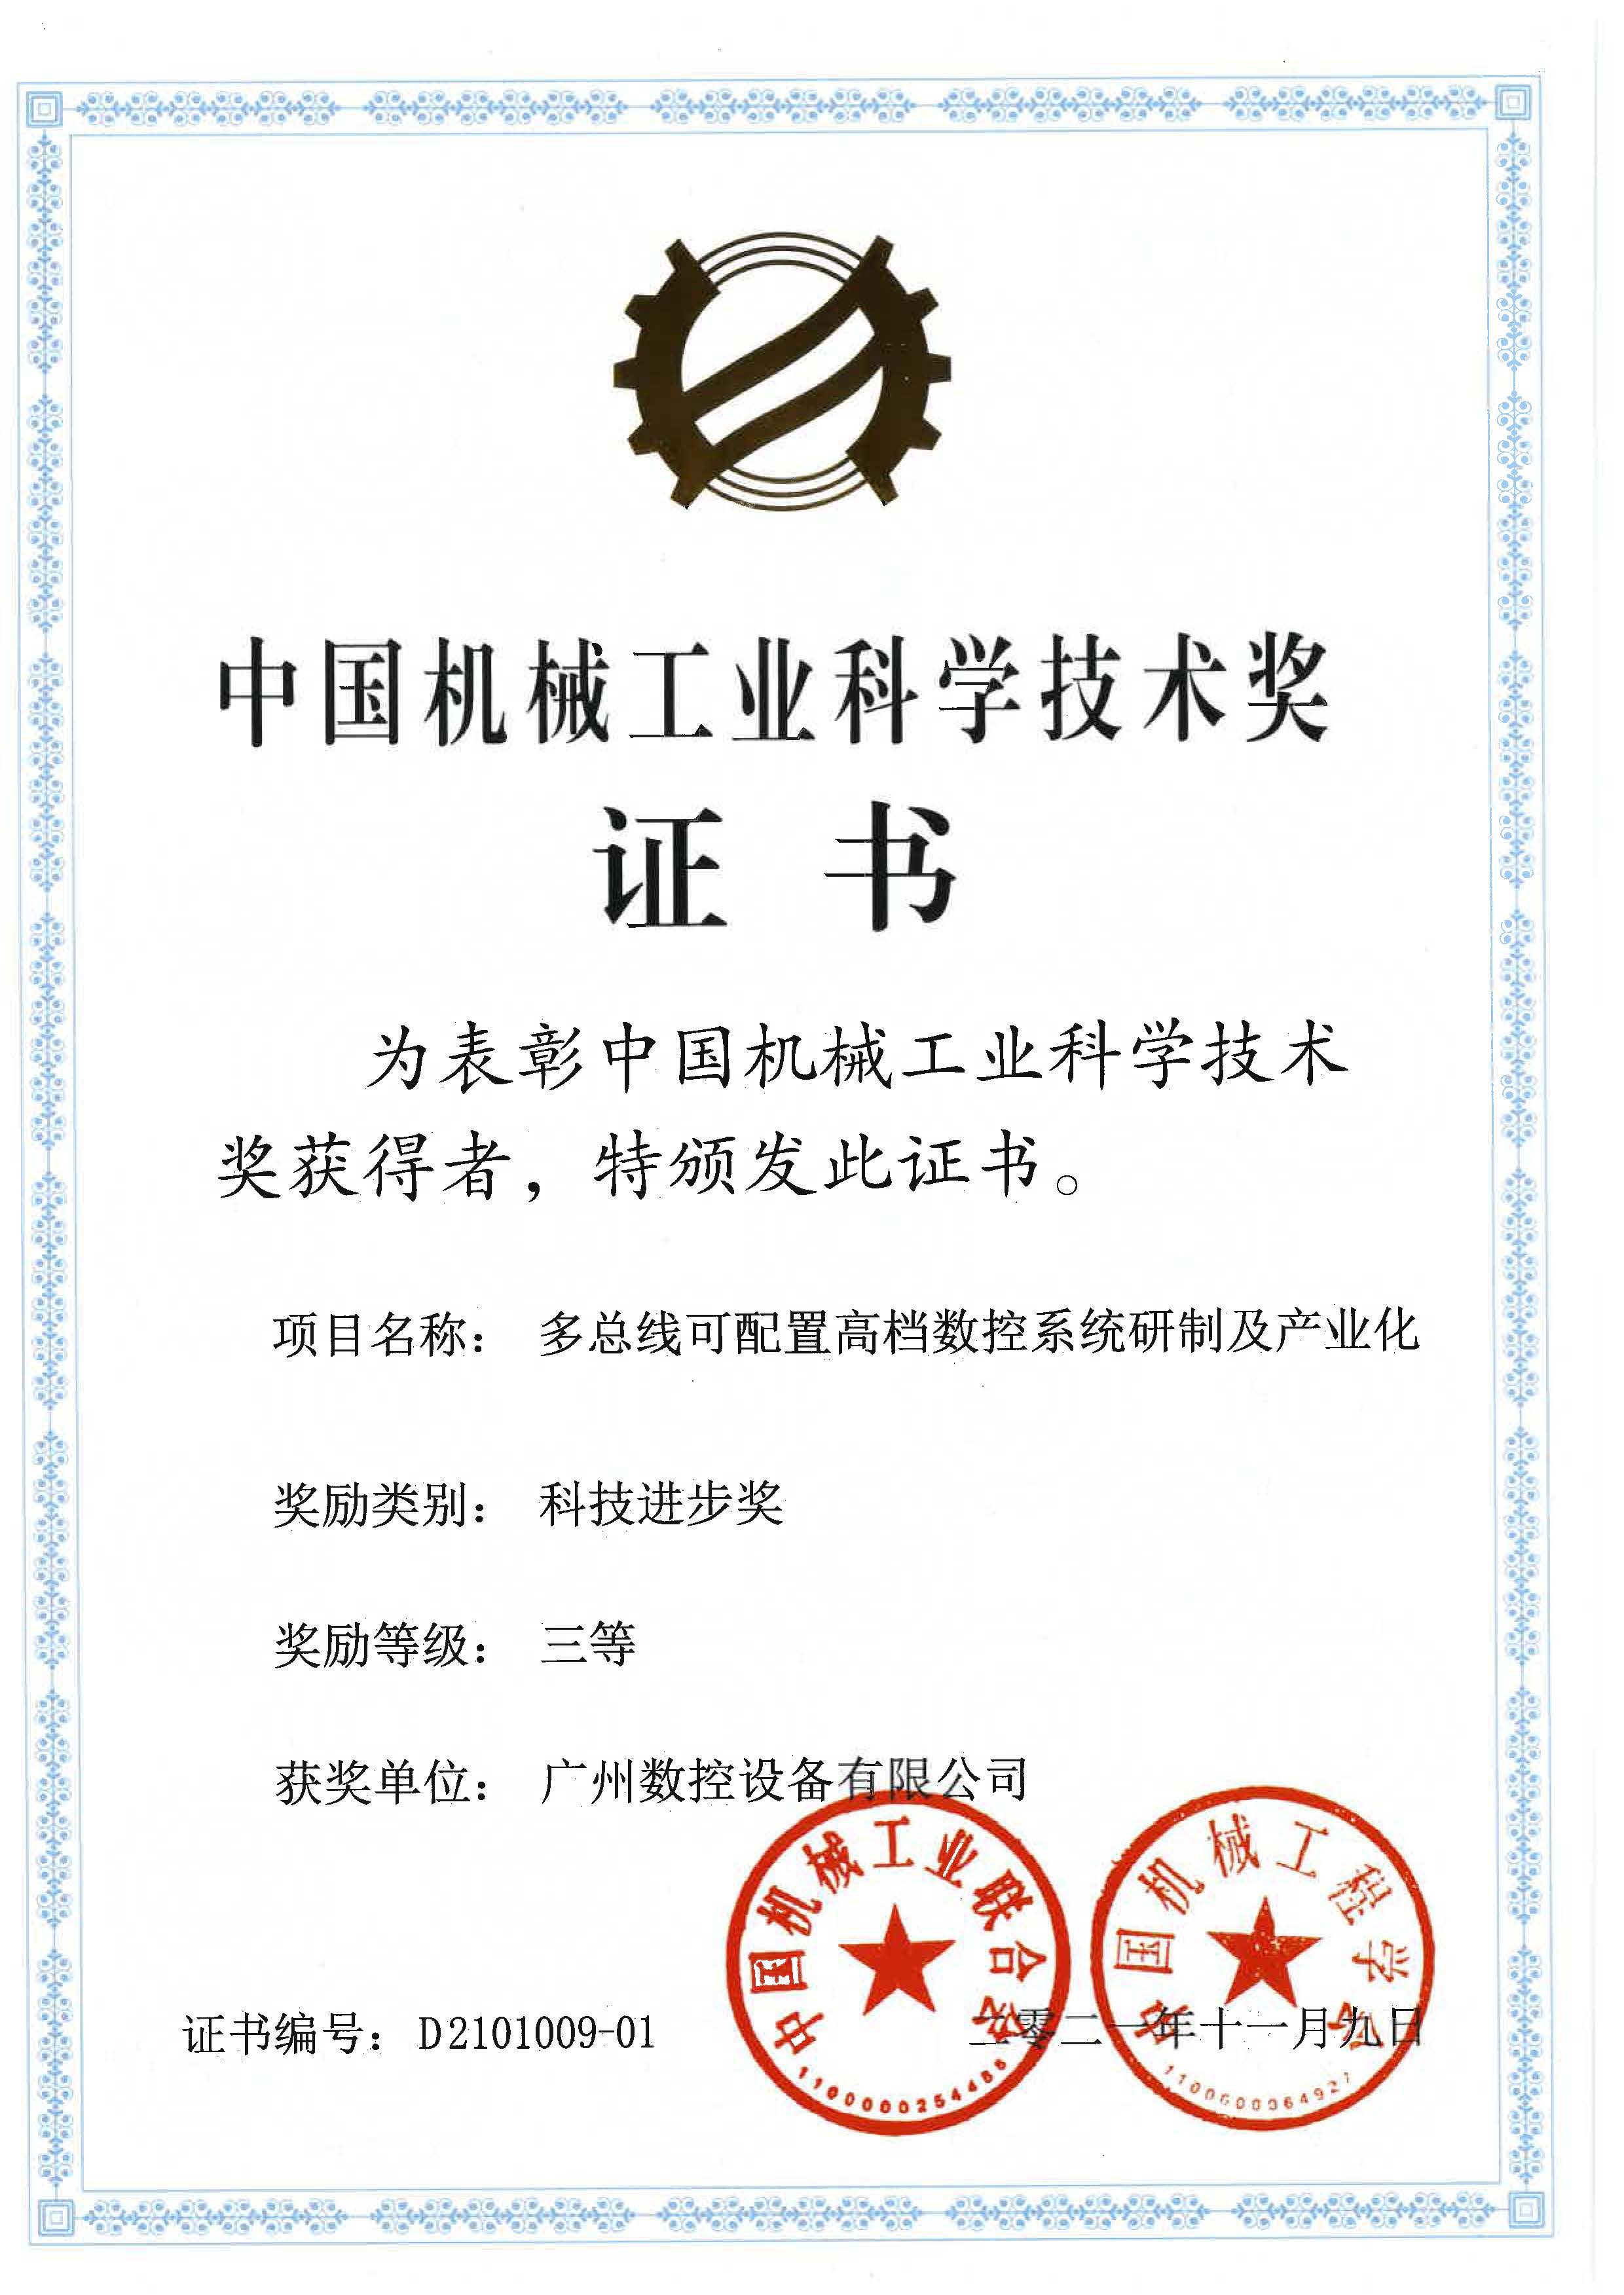 中国机械工业科学技术奖三等奖